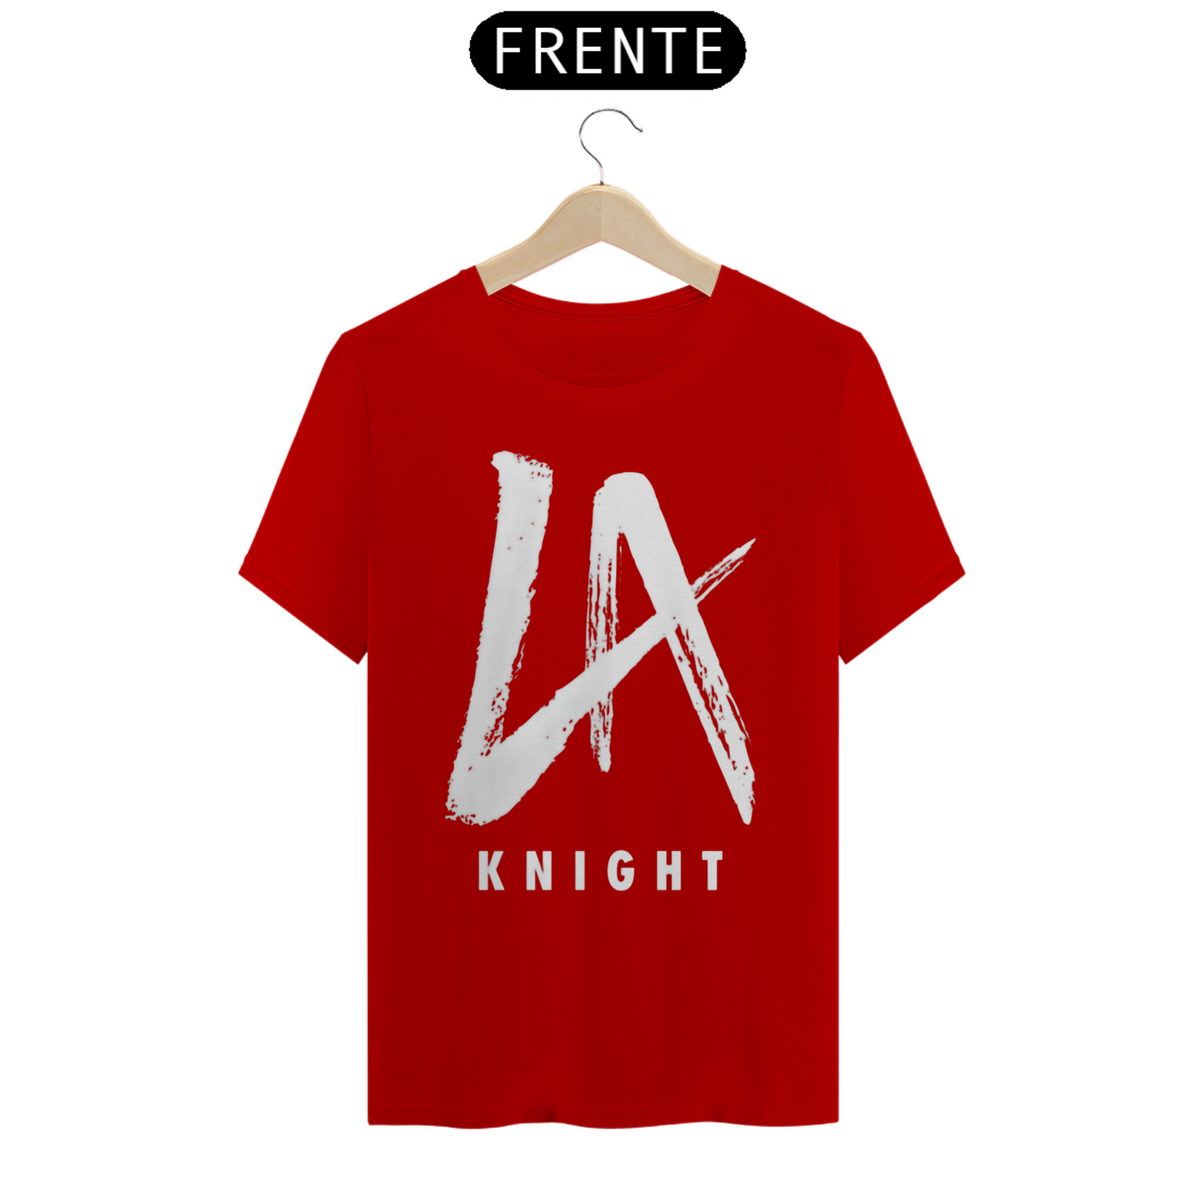 Nome do produto: LA Knight 